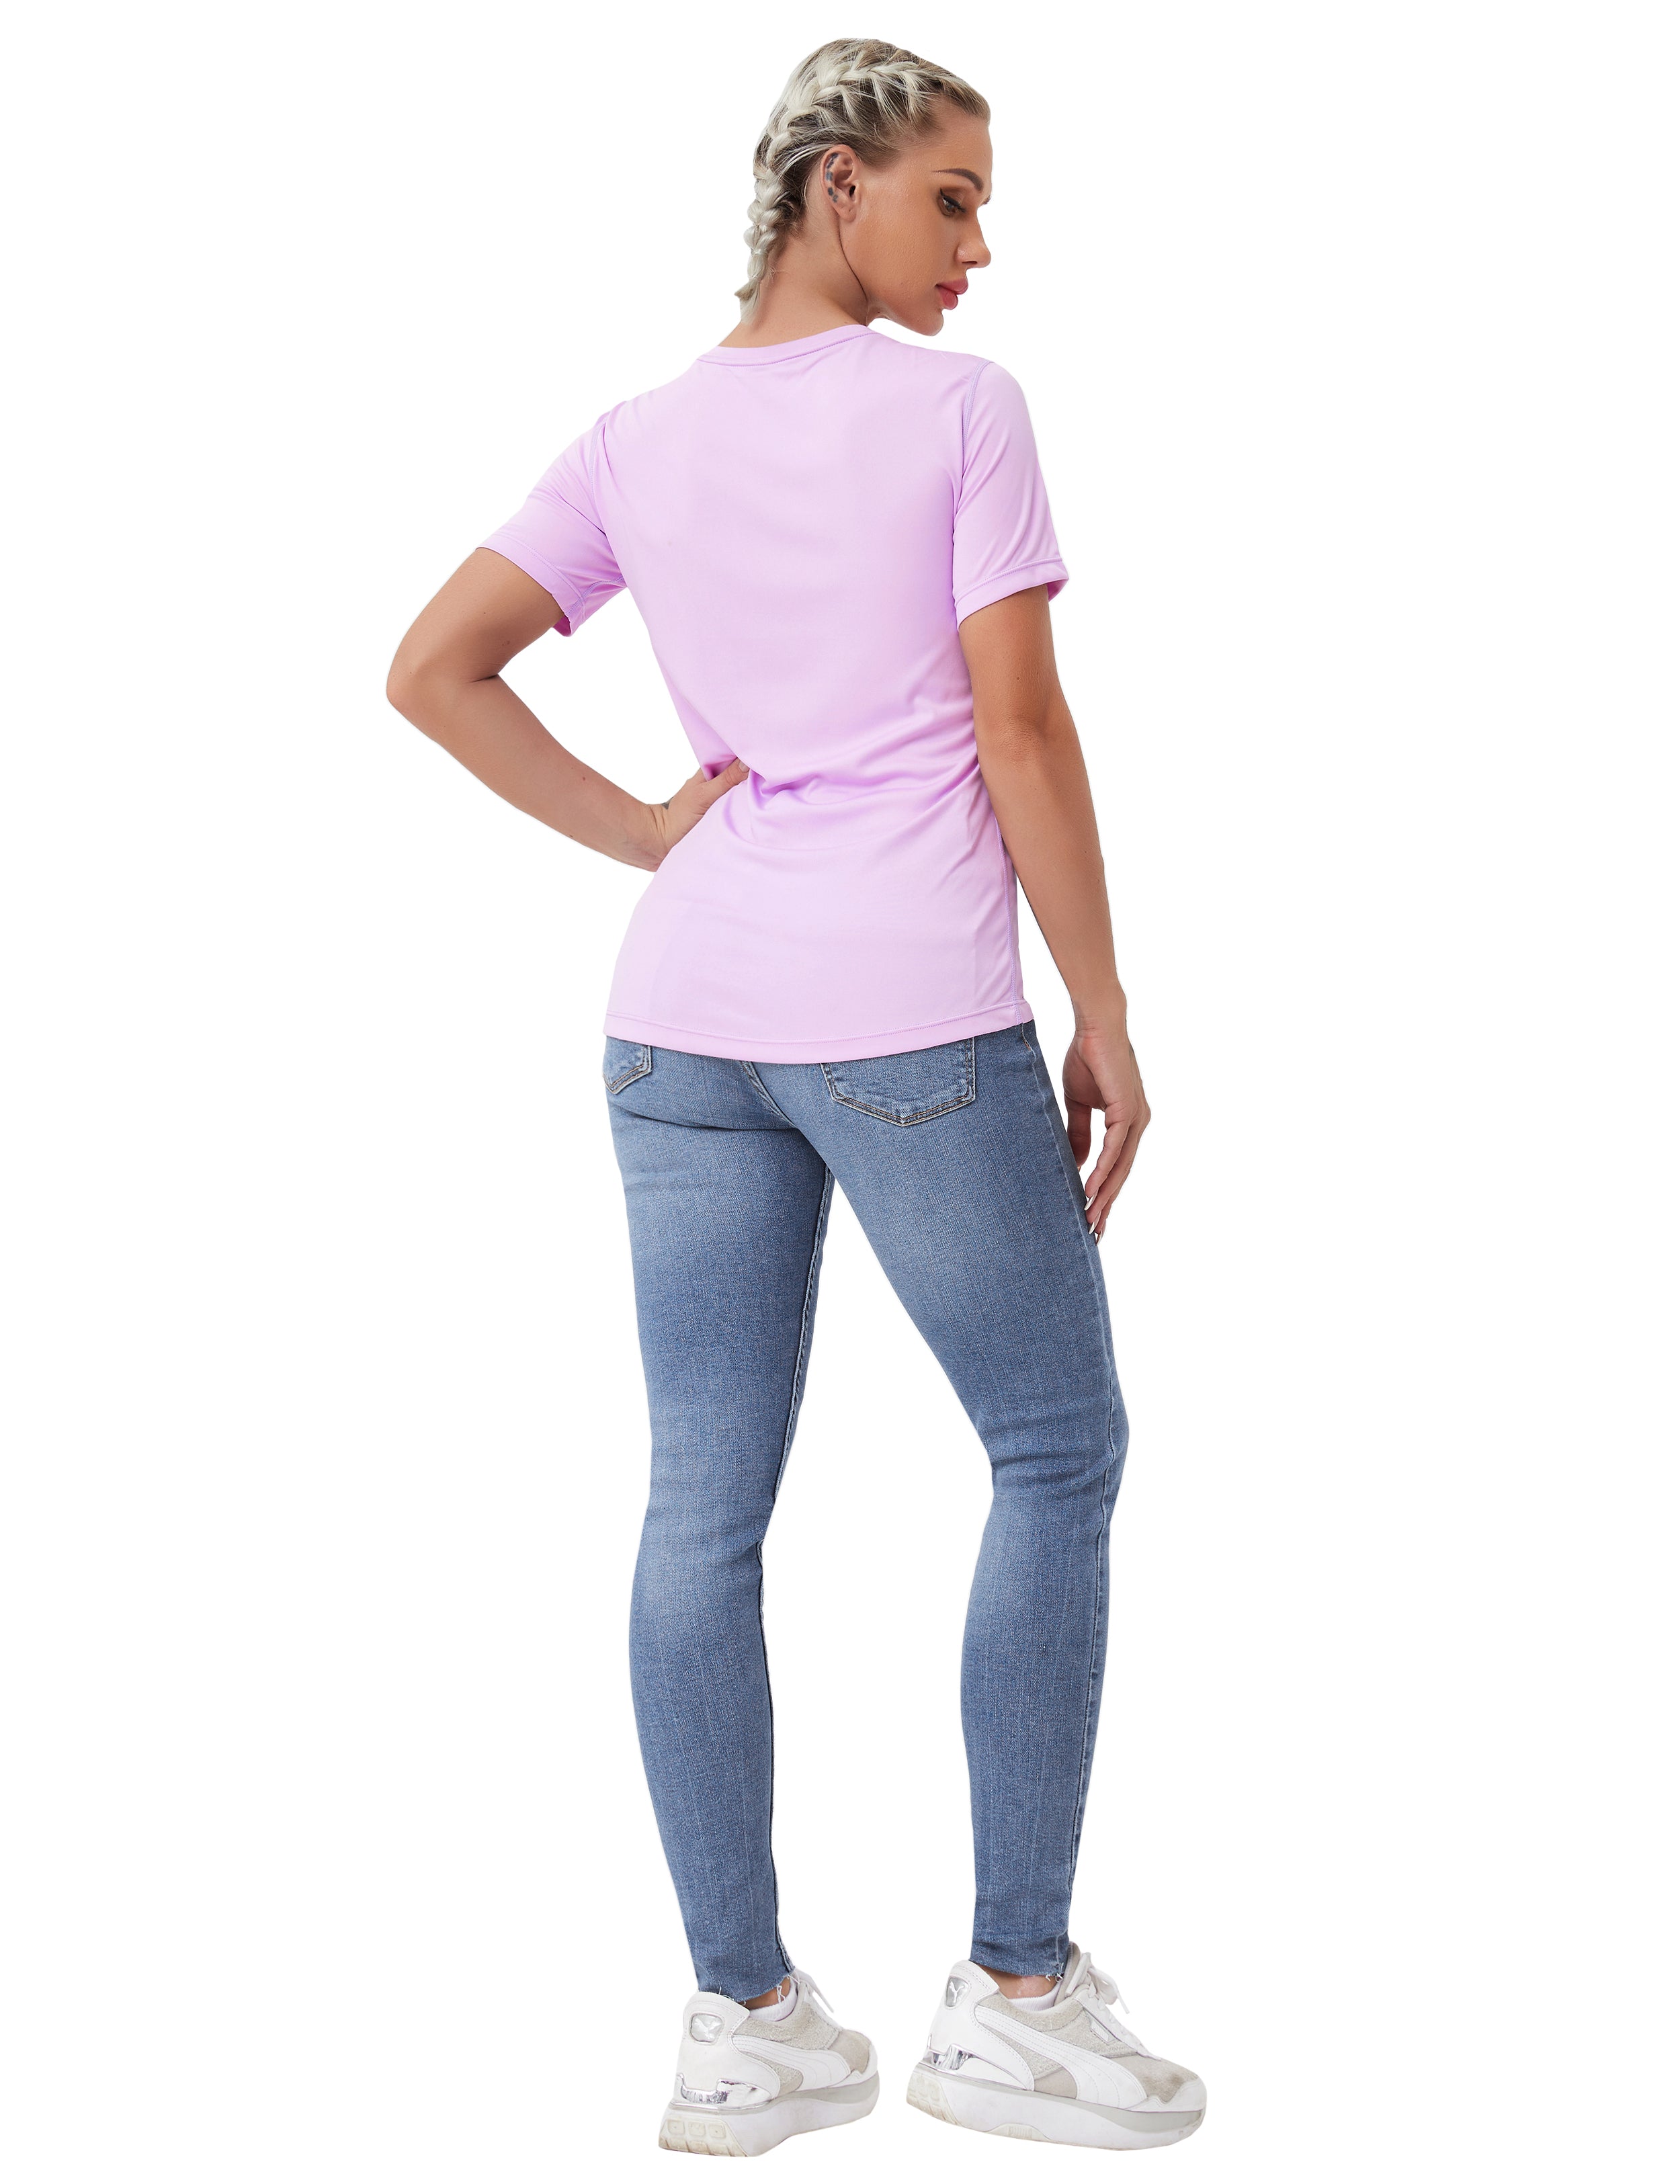 Short Sleeve Athletic Shirts purple_Pilates